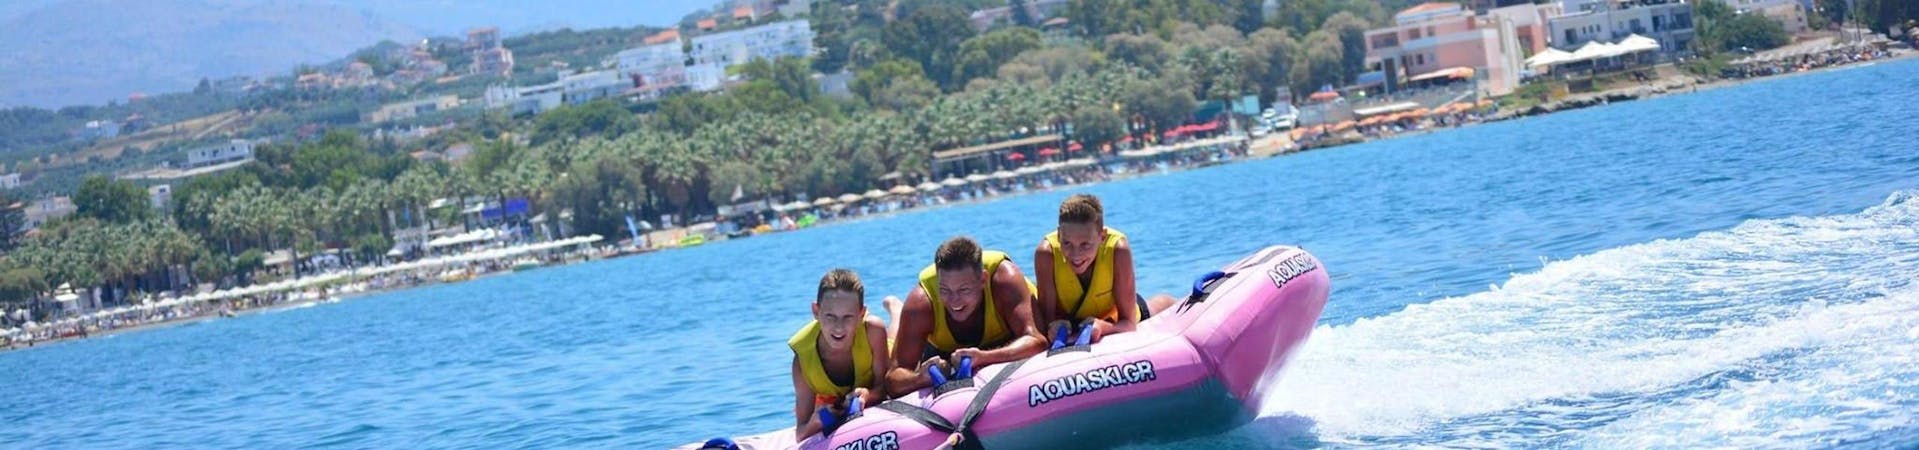 Eine Familie hat während der Airstream-Fahrt in Agia Marina mit Cactus Water Sports Center eine Menge Spaß.